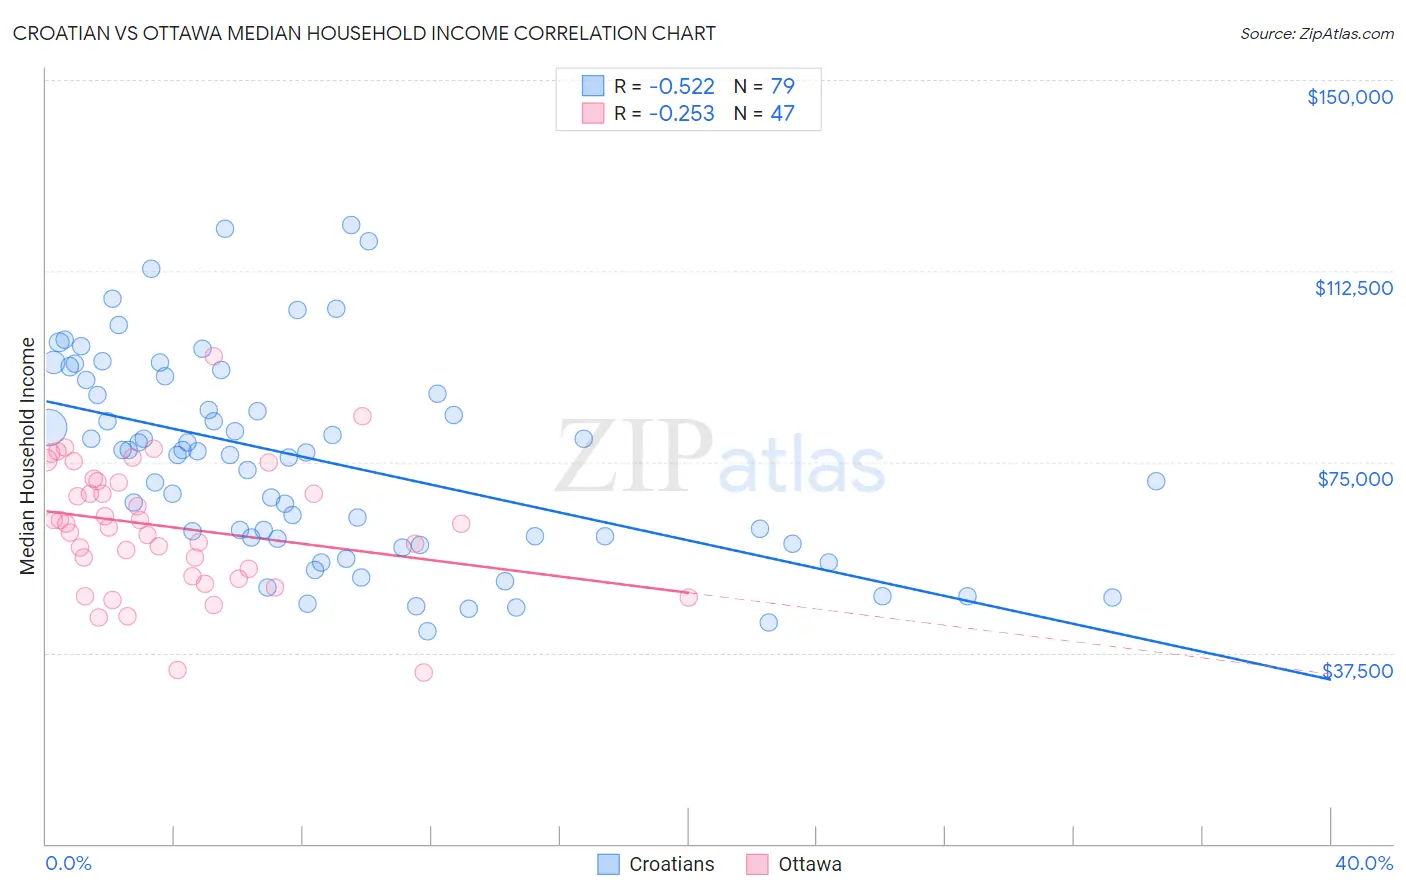 Croatian vs Ottawa Median Household Income